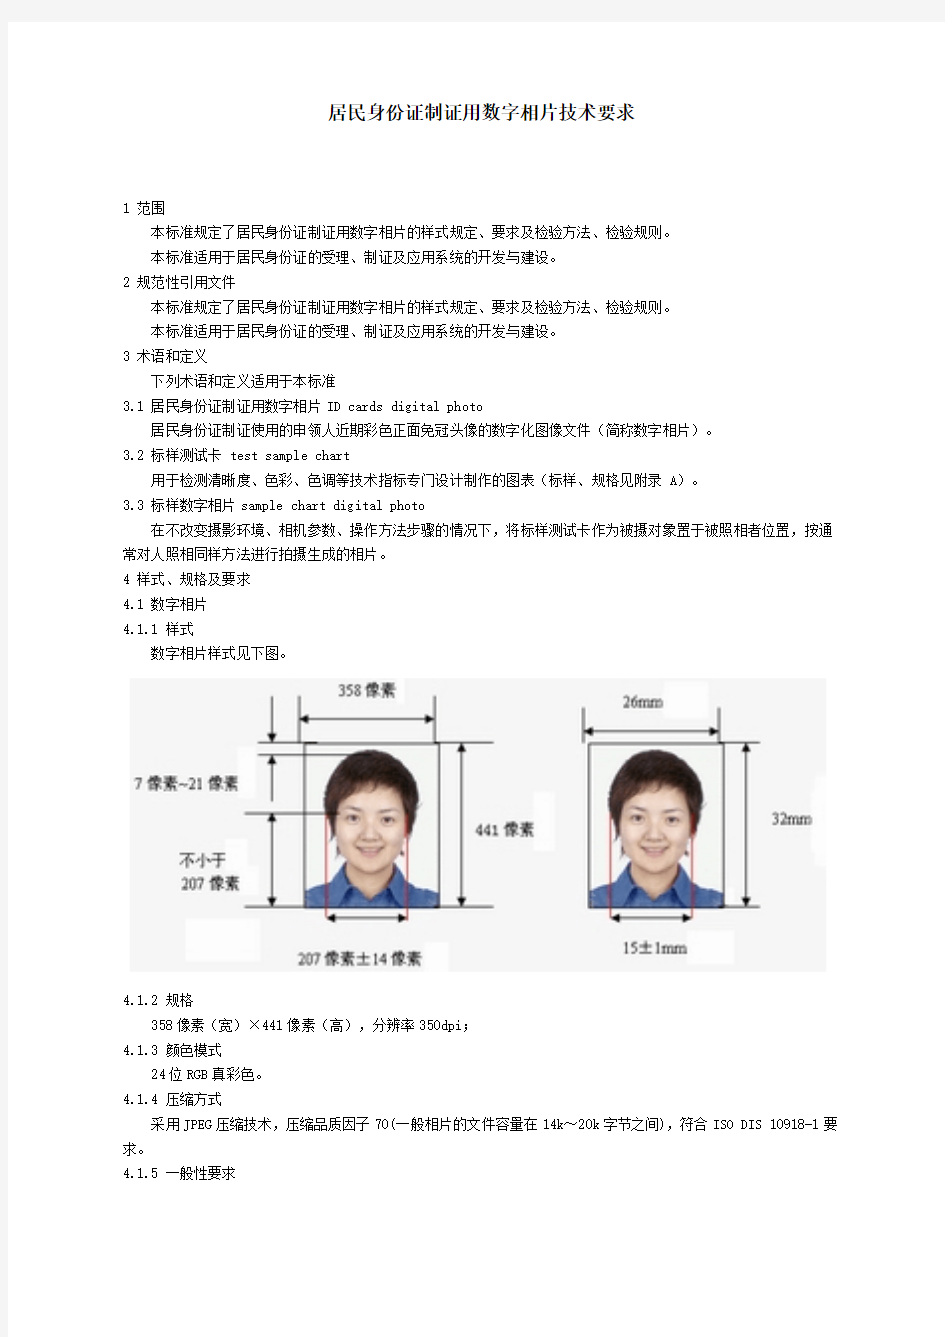 居民身份证制证用数字相片技术要求